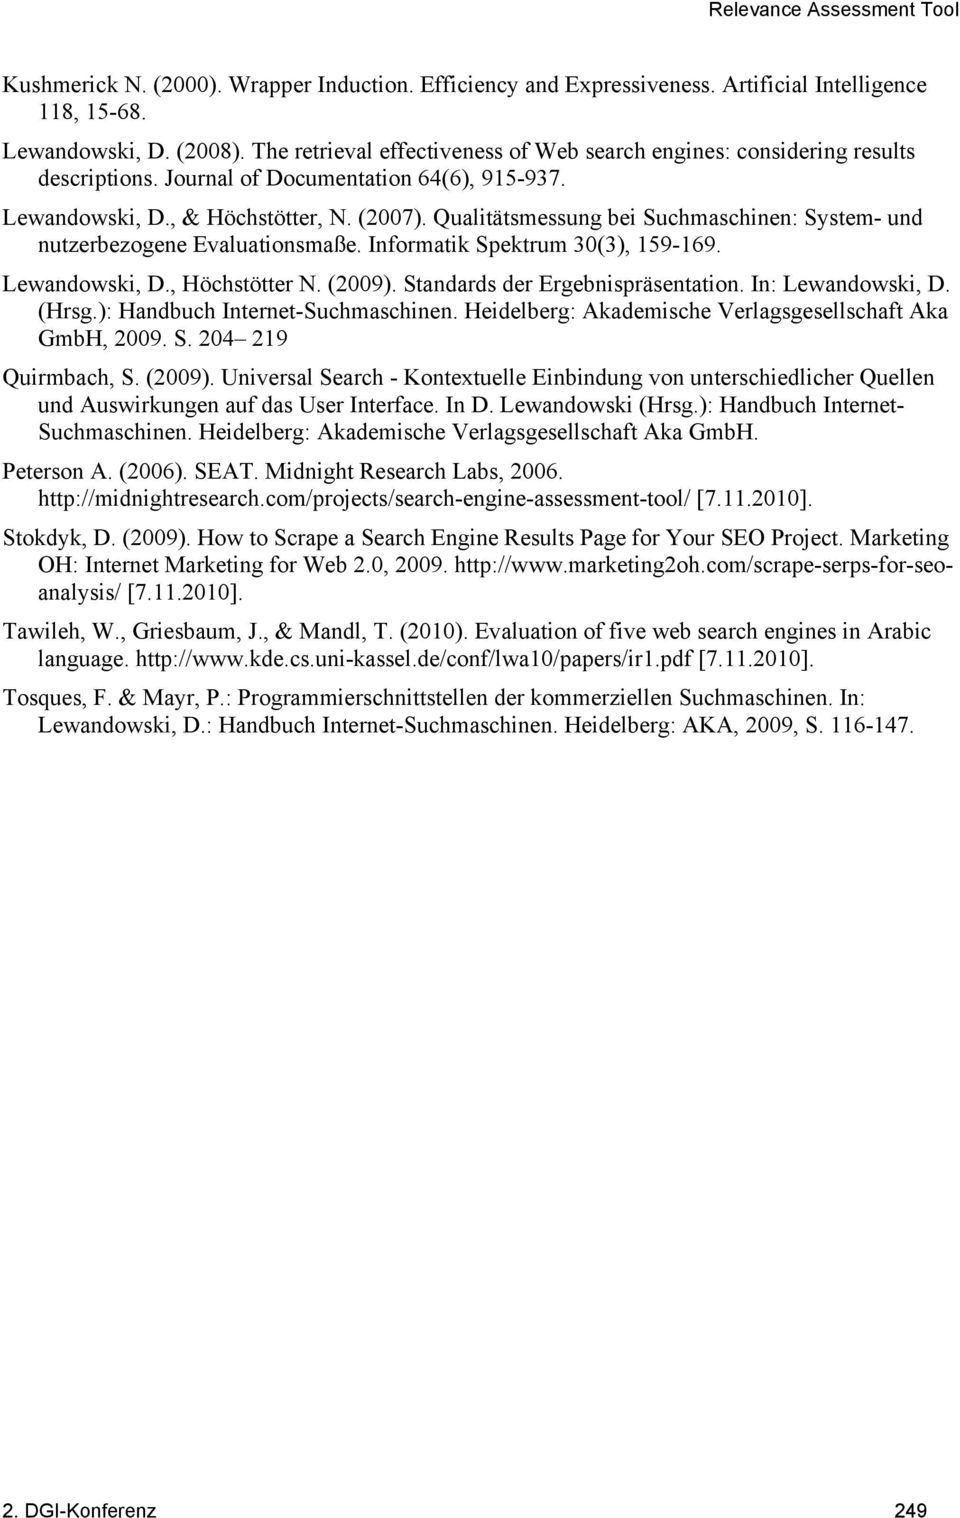 Qualitätsmessung bei Suchmaschinen: System- und nutzerbezogene Evaluationsmaße. Informatik Spektrum 30(3), 159-169. Lewandowski, D., Höchstötter N. (2009). Standards der Ergebnispräsentation.